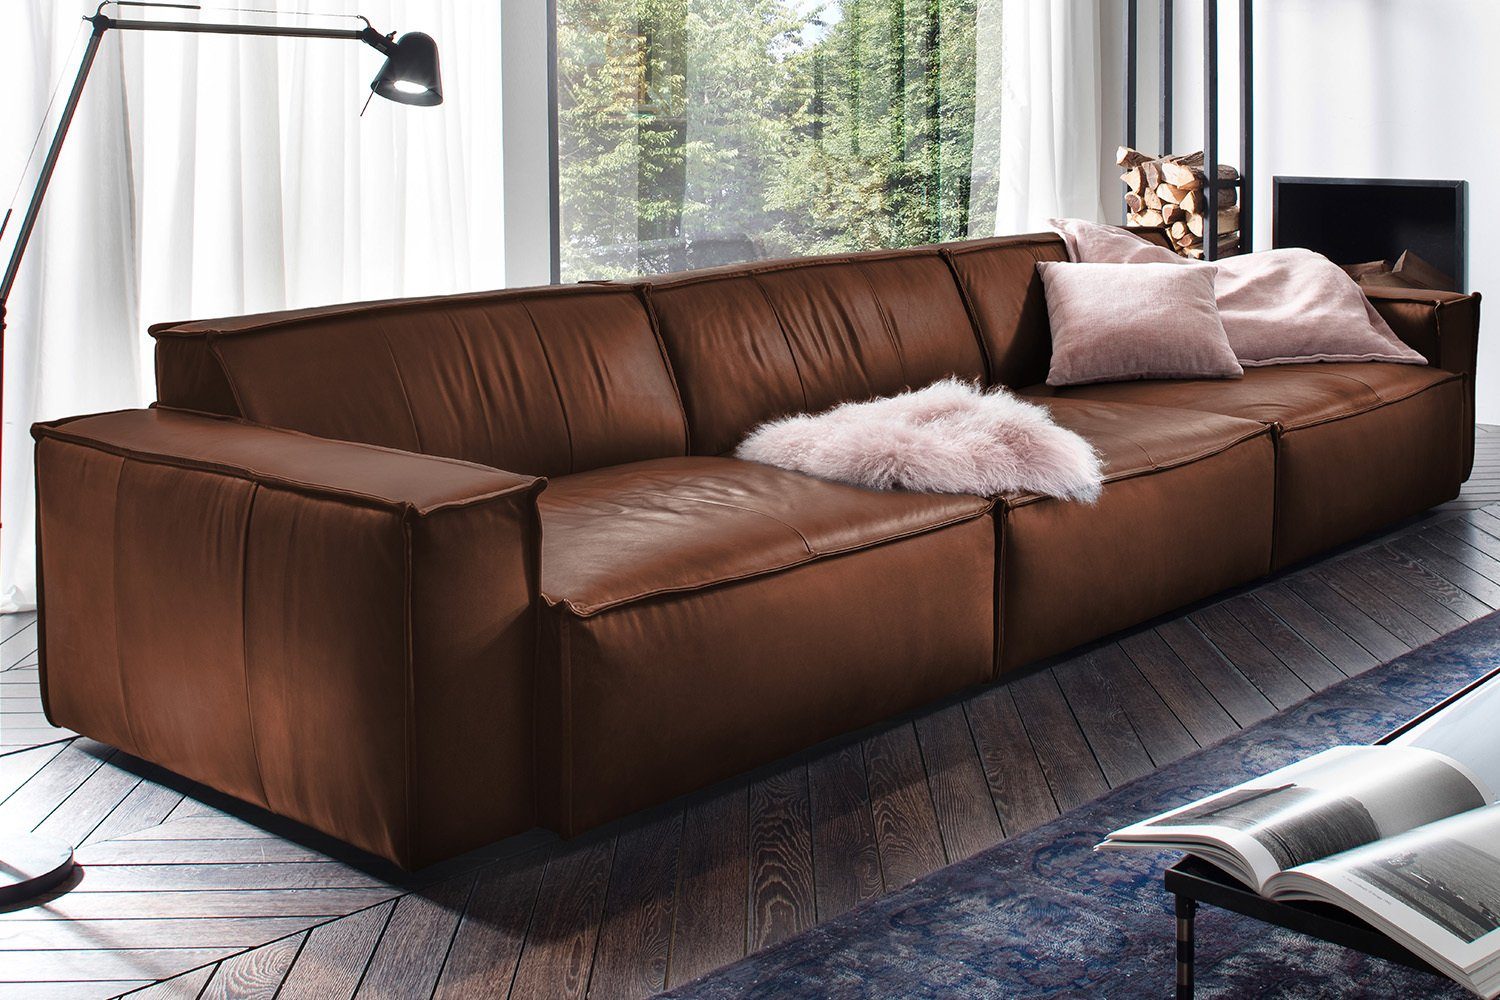 KAWOLA Sofa SAMU, Riesensofa Leder braun Farben verschiedene